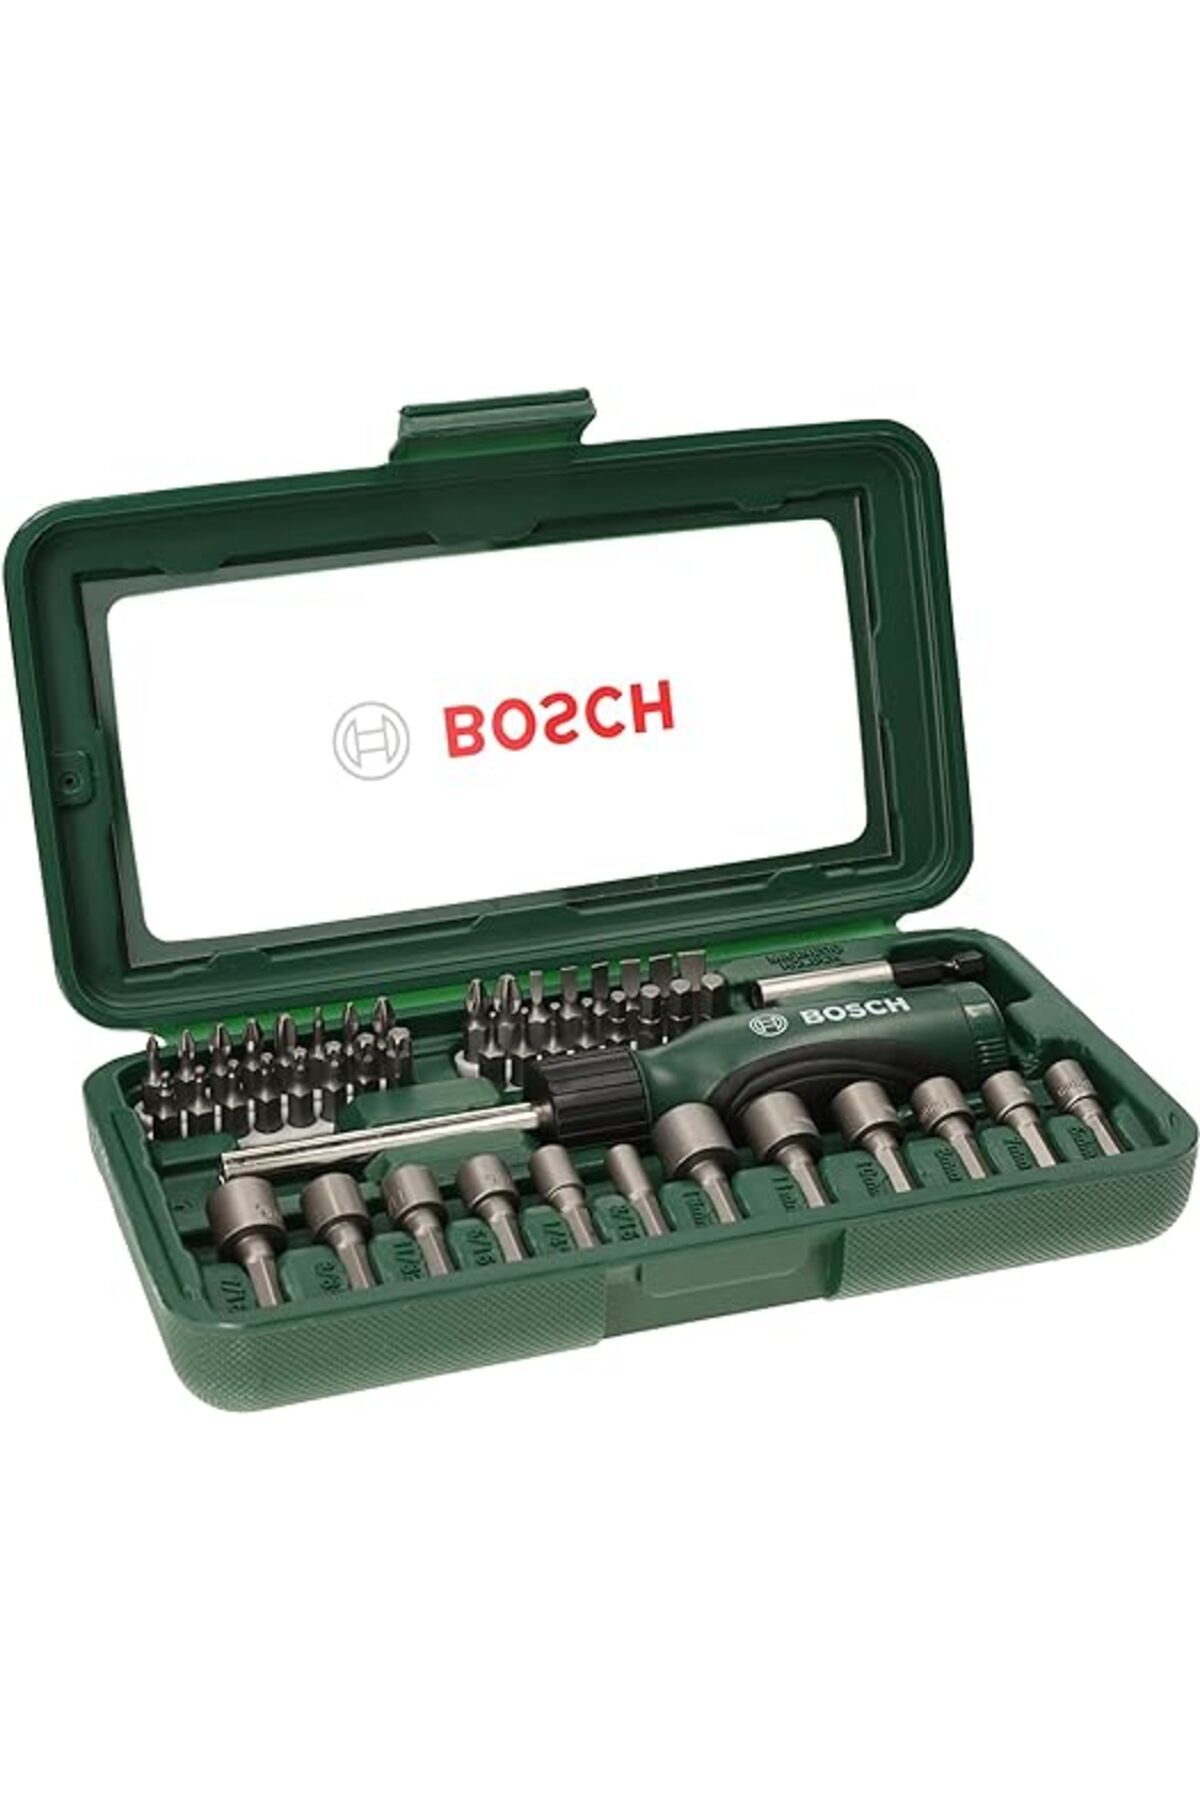 Bosch Professional 46 adet Tornavida ucu ve lokma anahtar seti (PH, PZ, altıgen, T, S ucu, matkap v